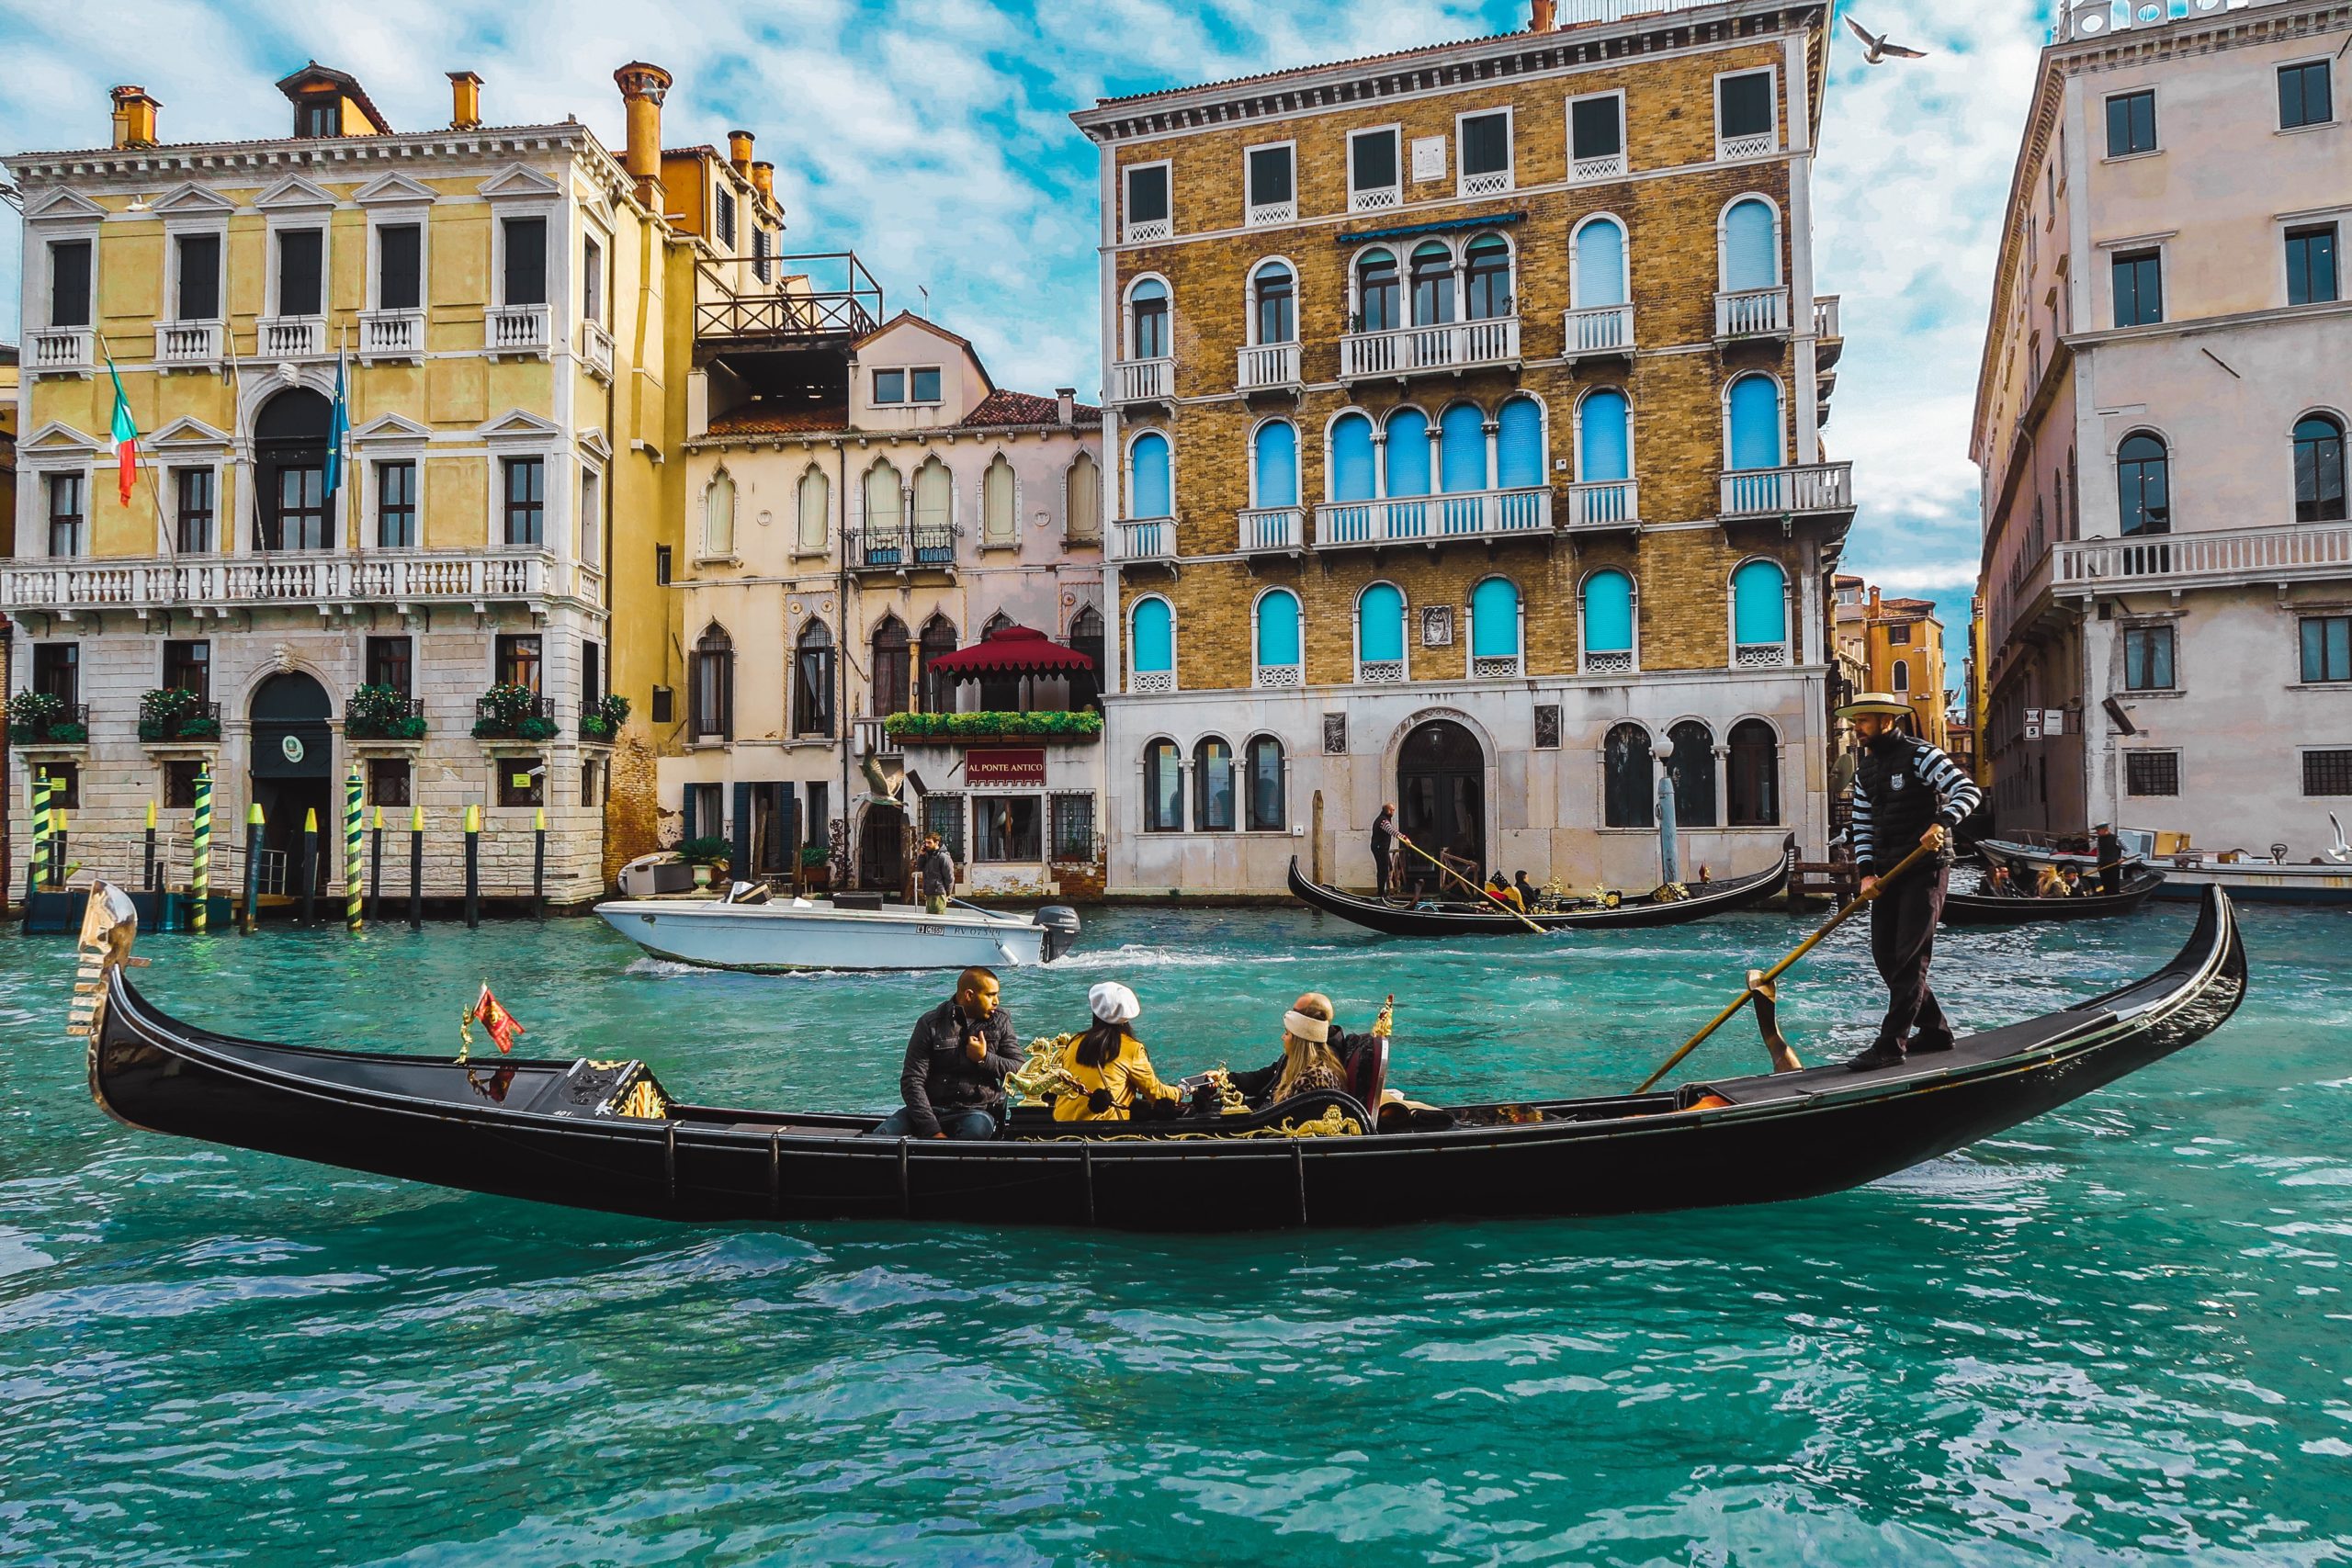 Turistas cayeron al agua en Venecia tras volcar la góndola en la que viajaban